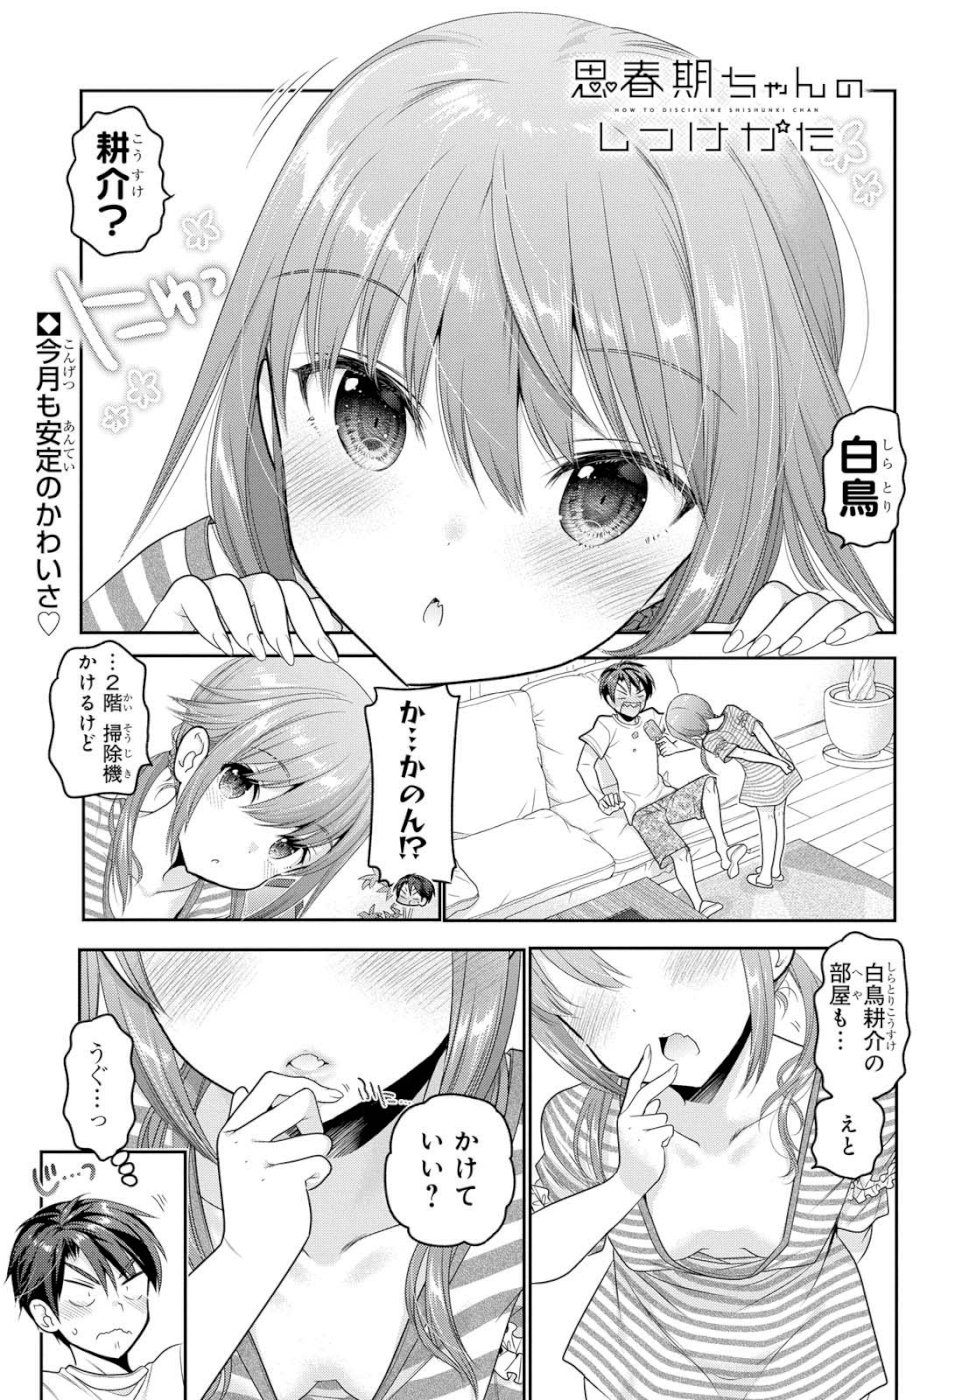 Shishunki-chan no Shitsukekata - Chapter 6 - Page 1